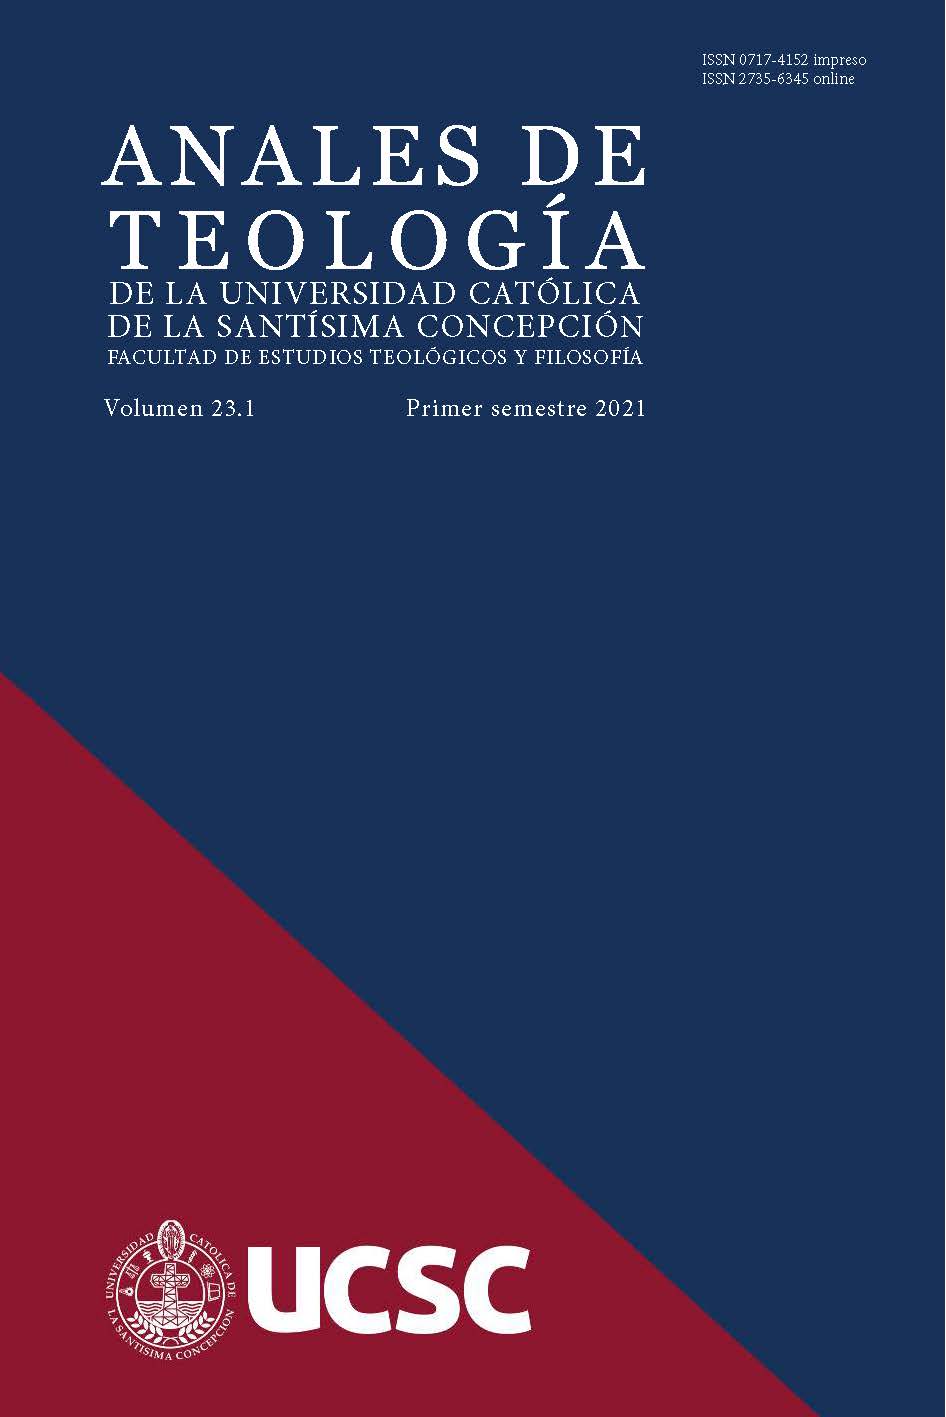 					Ver Vol. 23 Núm. 1 (2021): Anales de Teología | Enero - Junio 2021
				